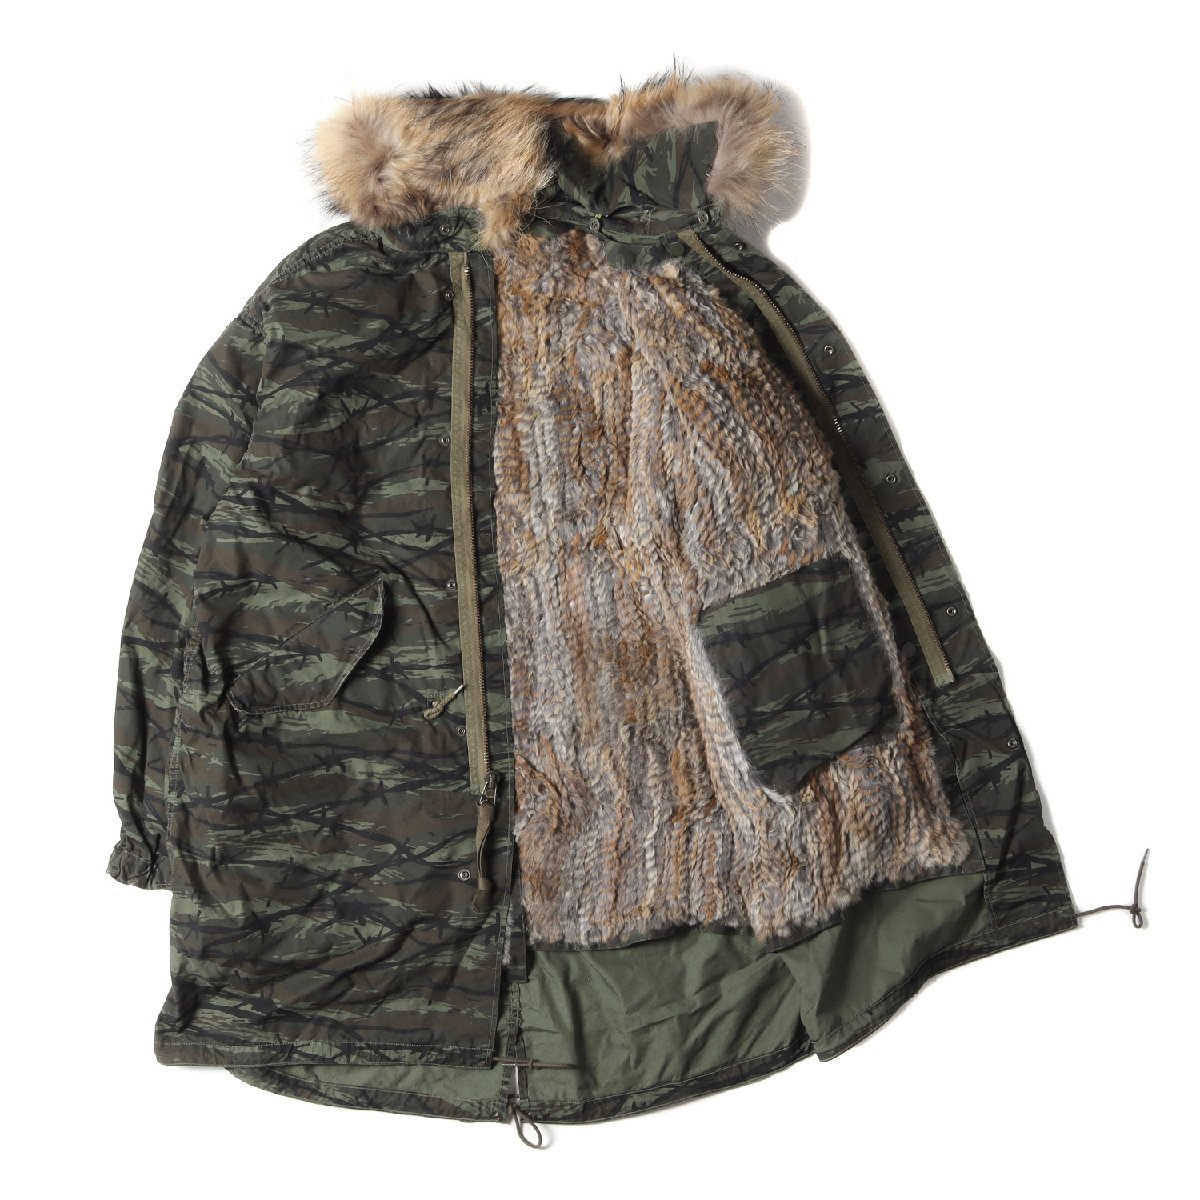  новый товар  HYSTERIC GLAMOUR ...  пиджак   размер  :M 21AW  мех ... идет в комплекте  M-65 ... ... пальто   военный    машина ...